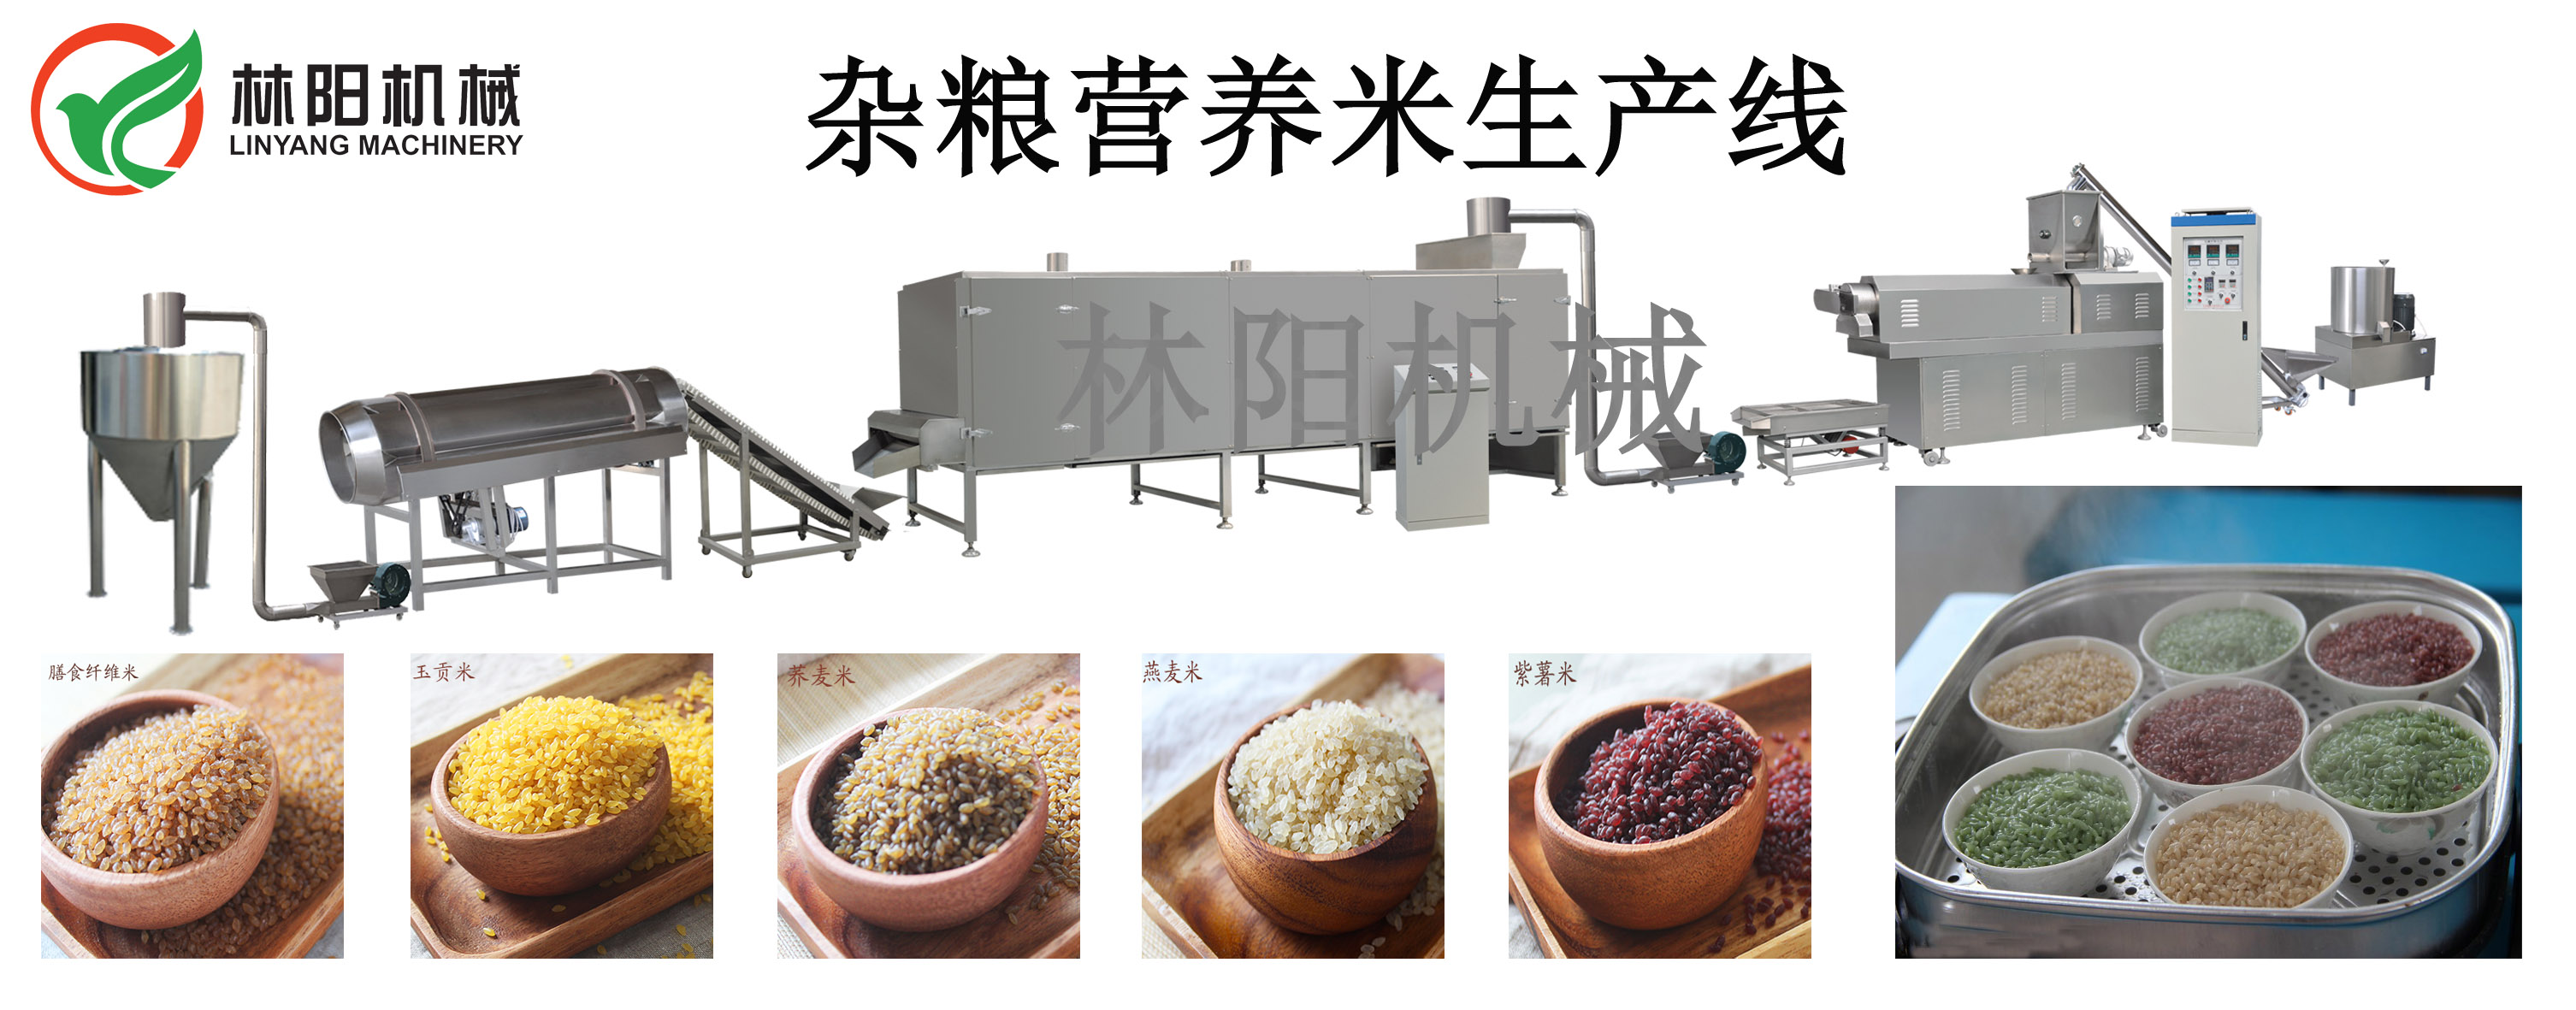 营养米黄金米生产设备